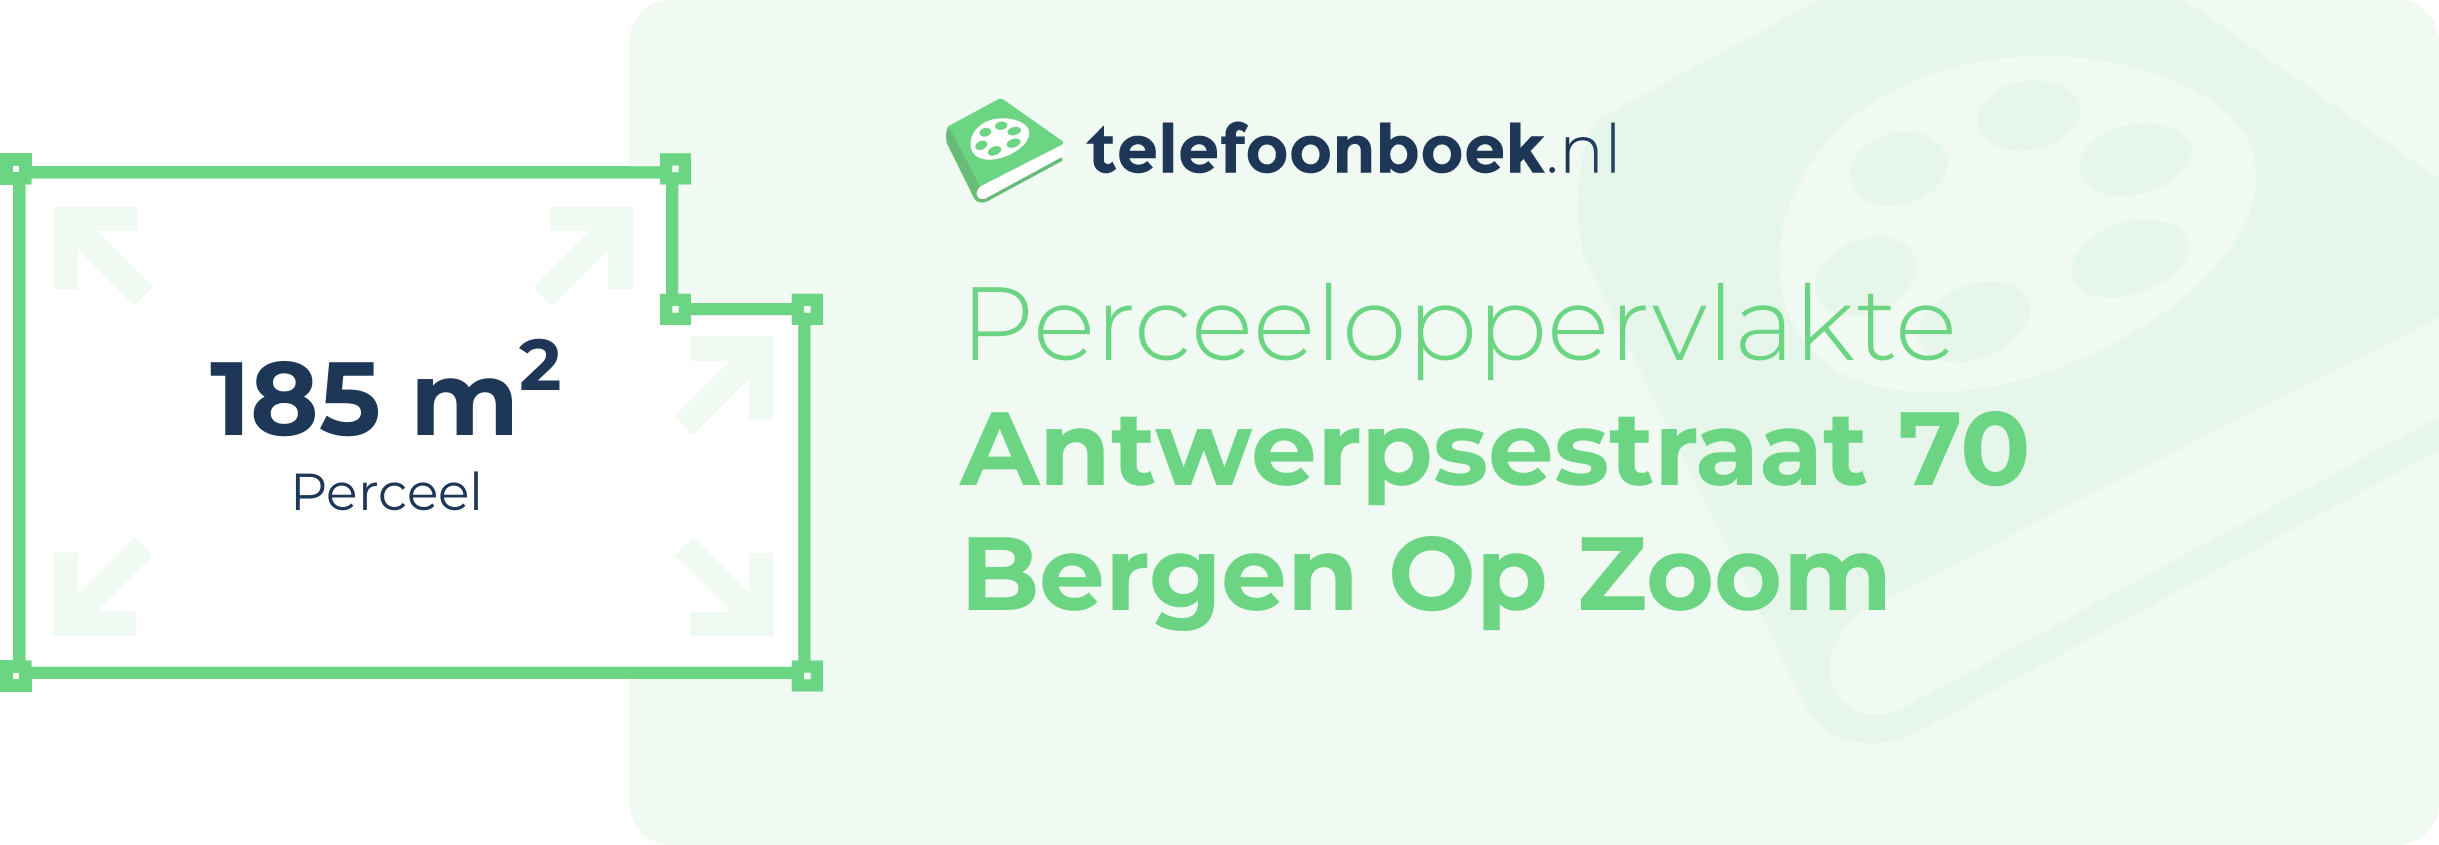 Perceeloppervlakte Antwerpsestraat 70 Bergen Op Zoom